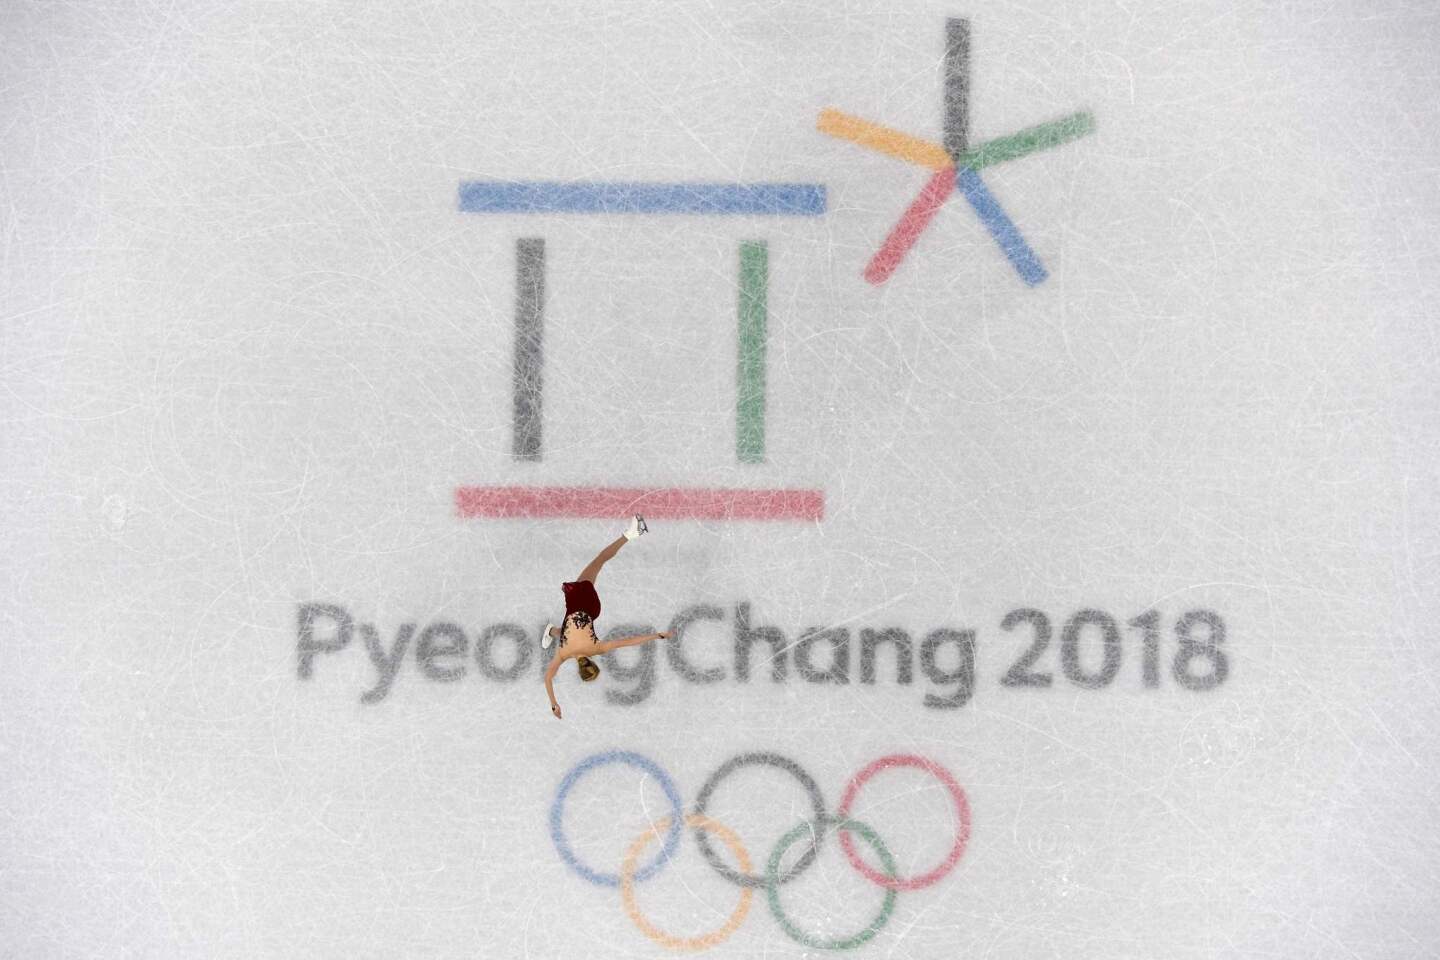 Pyeongchang 2018 Día 2